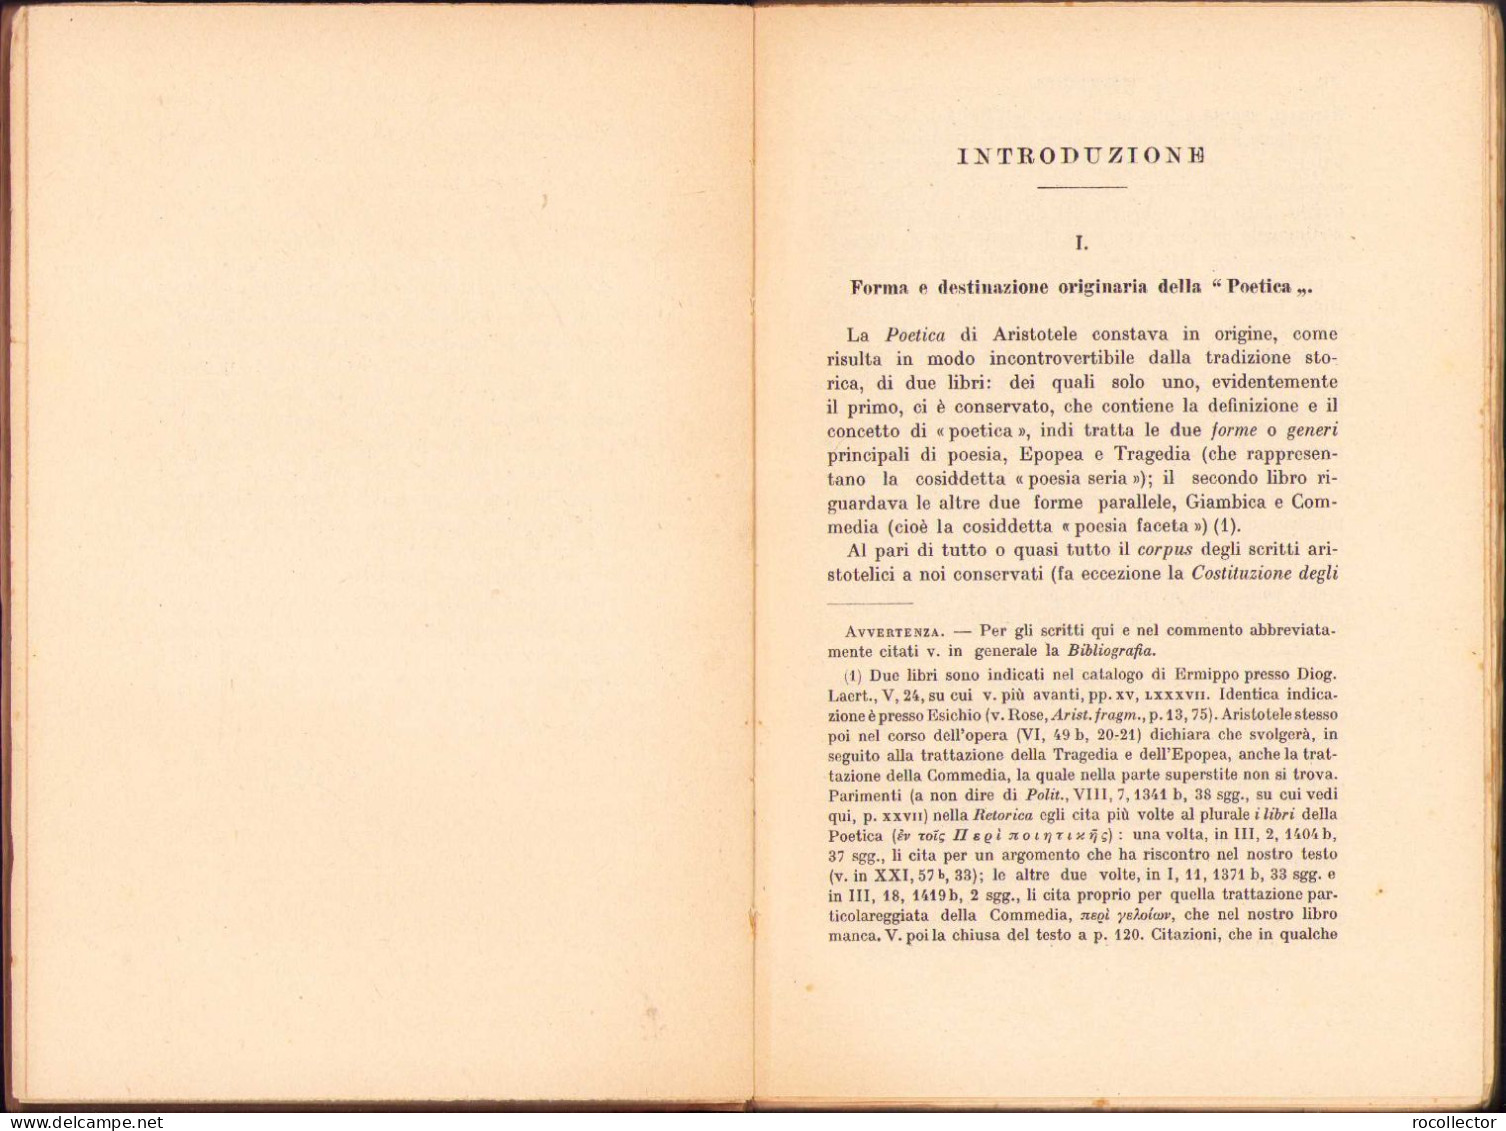 La Poetica Di Aristotele Di Augusto Rostagni, 1934 C999 - Livres Anciens